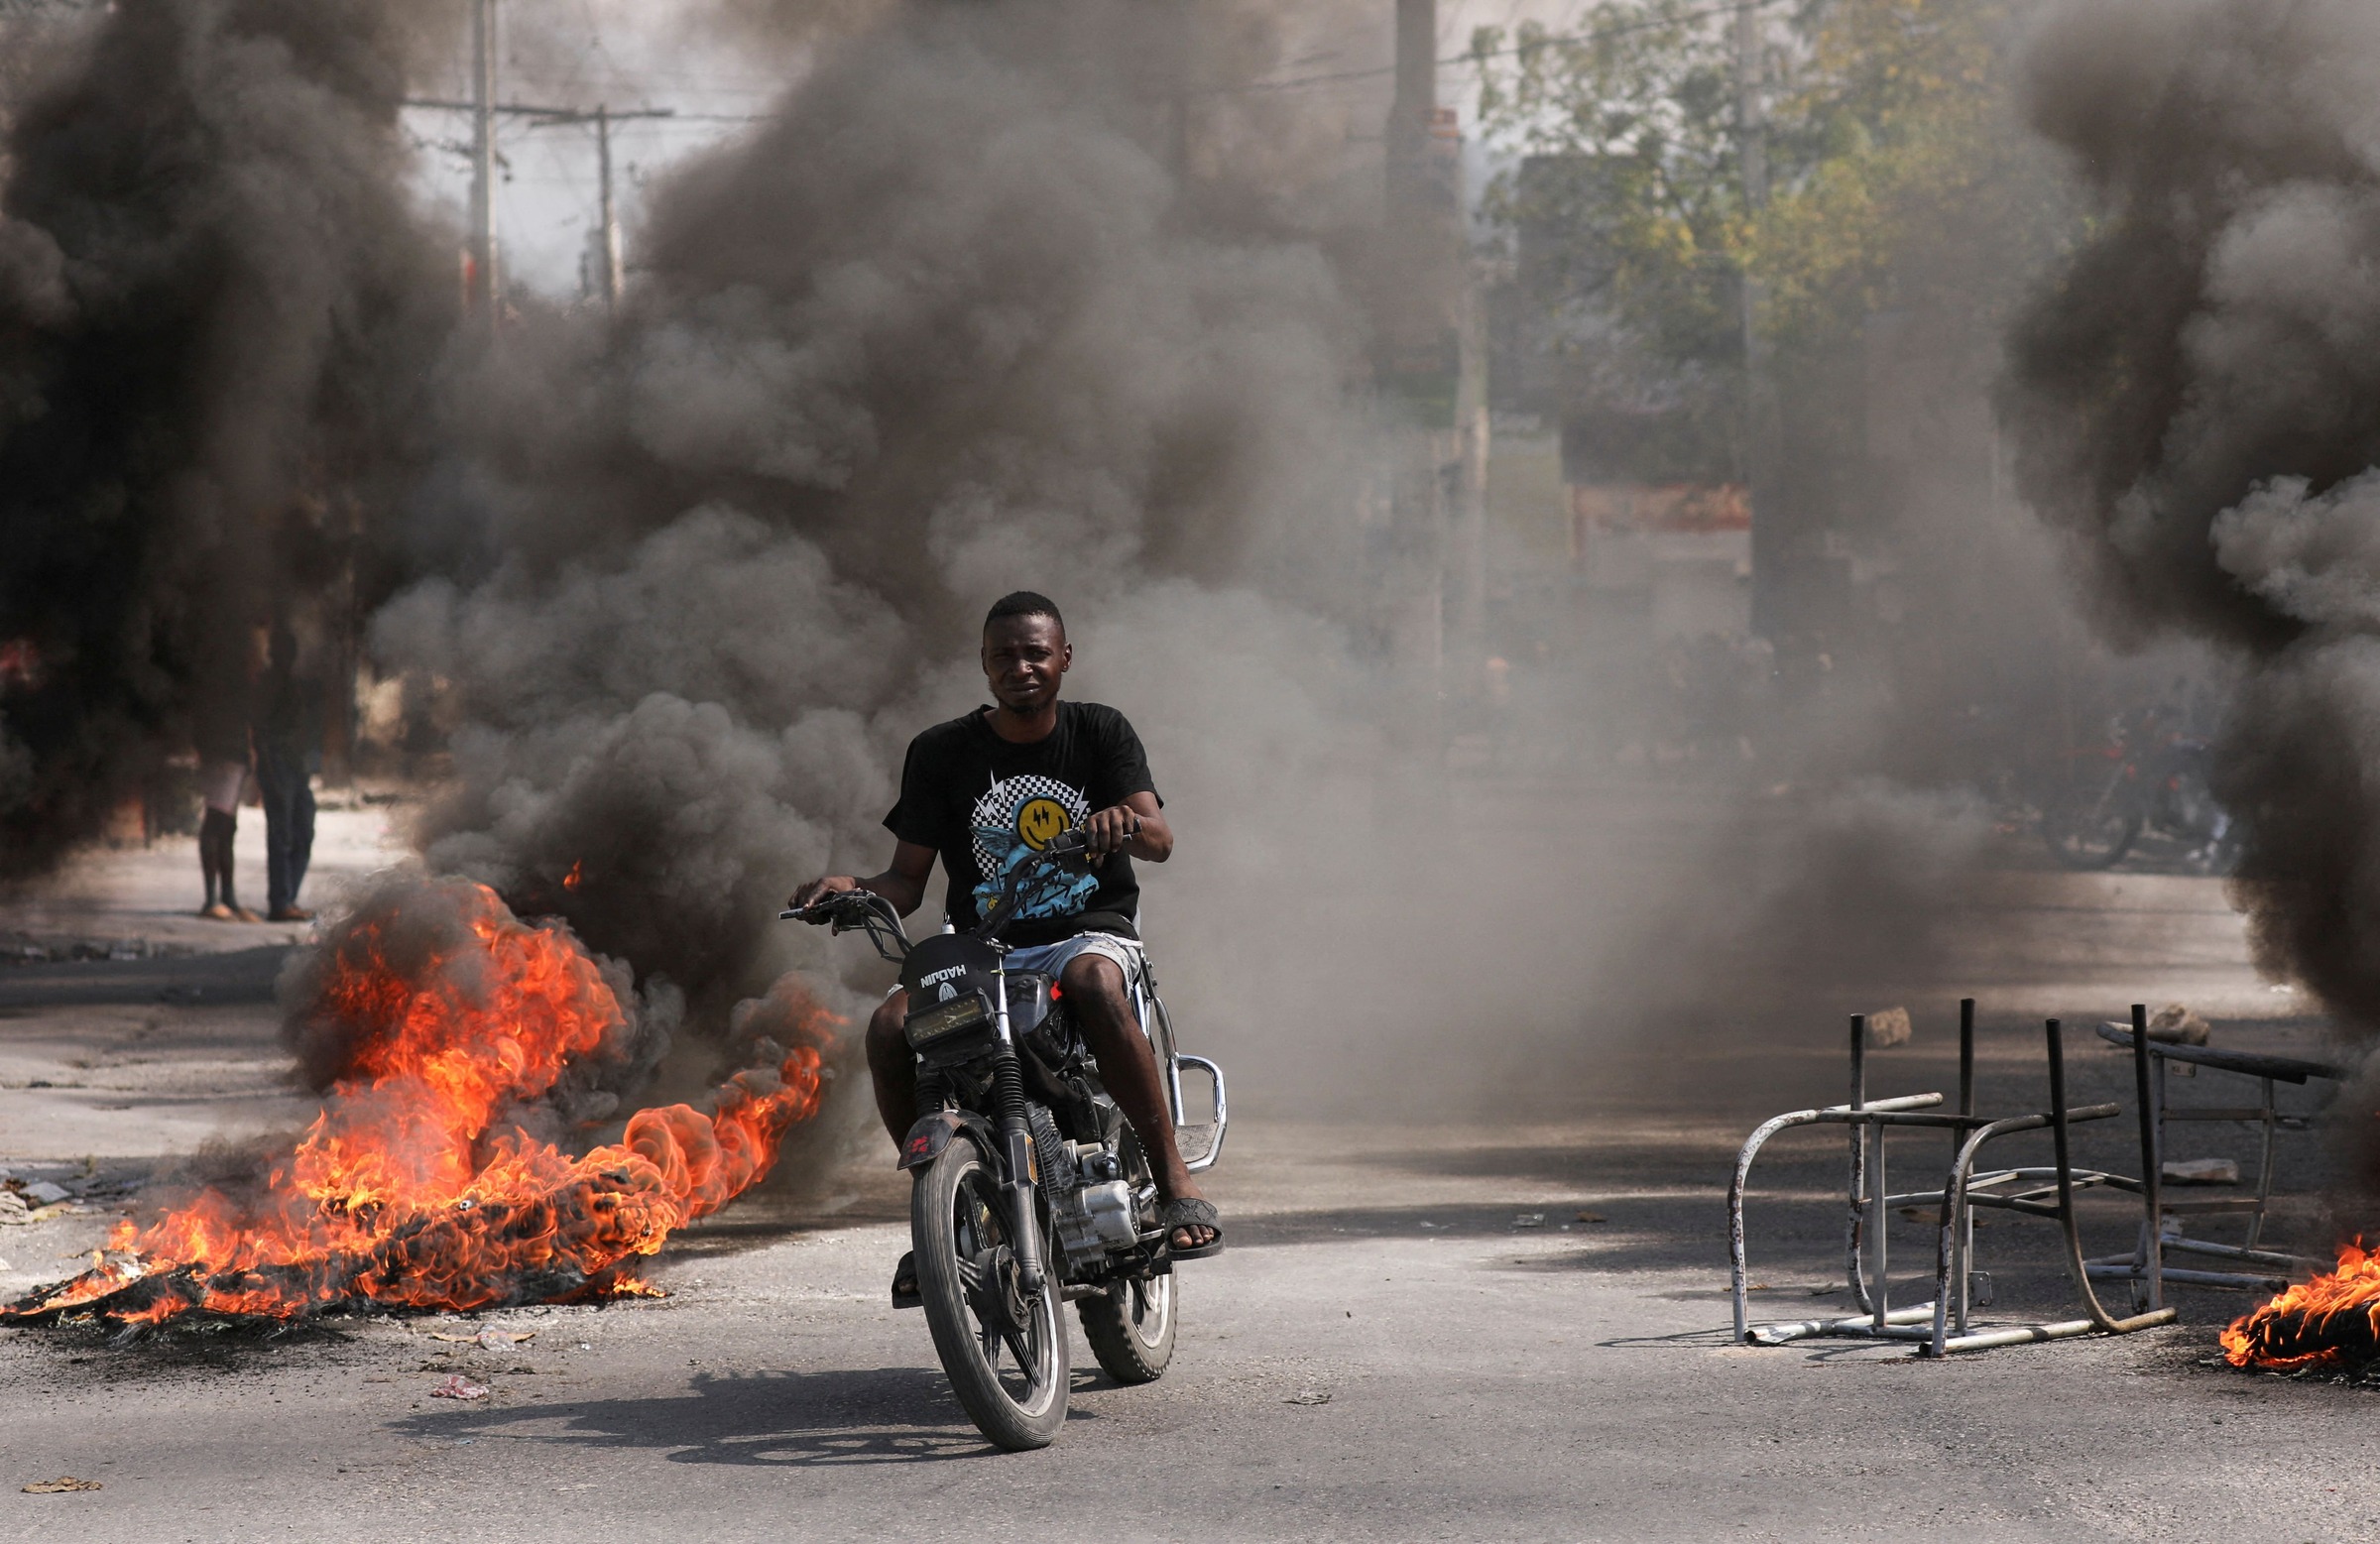 帮派暴乱枪声四起4警亡  扬言欲推翻海地总理 